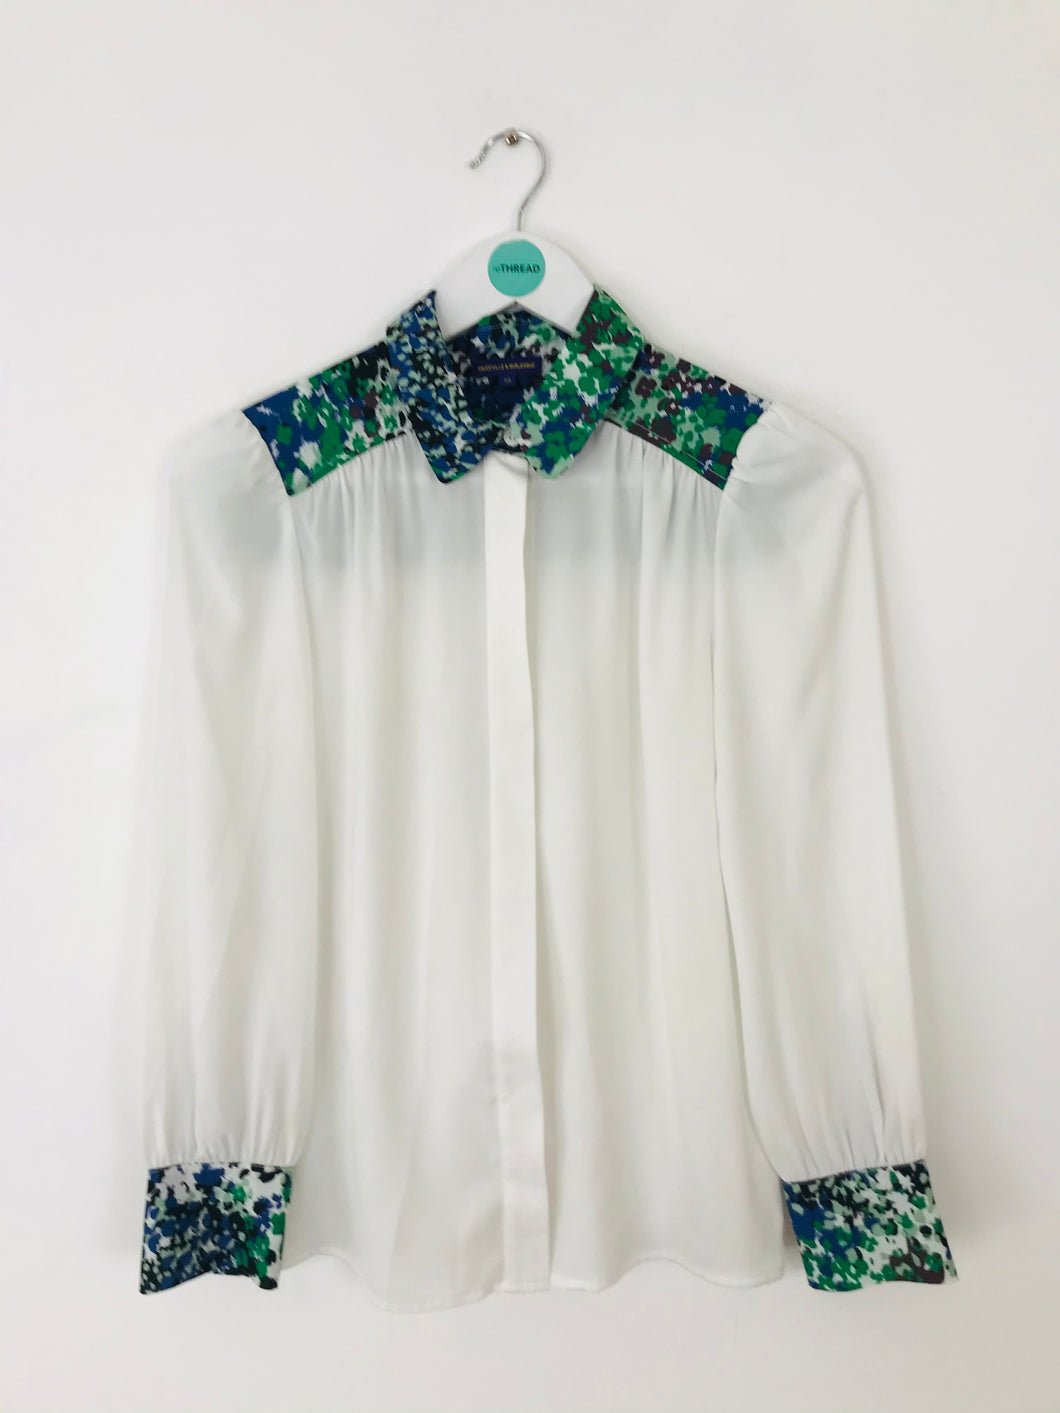 Vaudeville & Burlesque Women’s Contrast Floral Shirt | XS UK6-8 | White